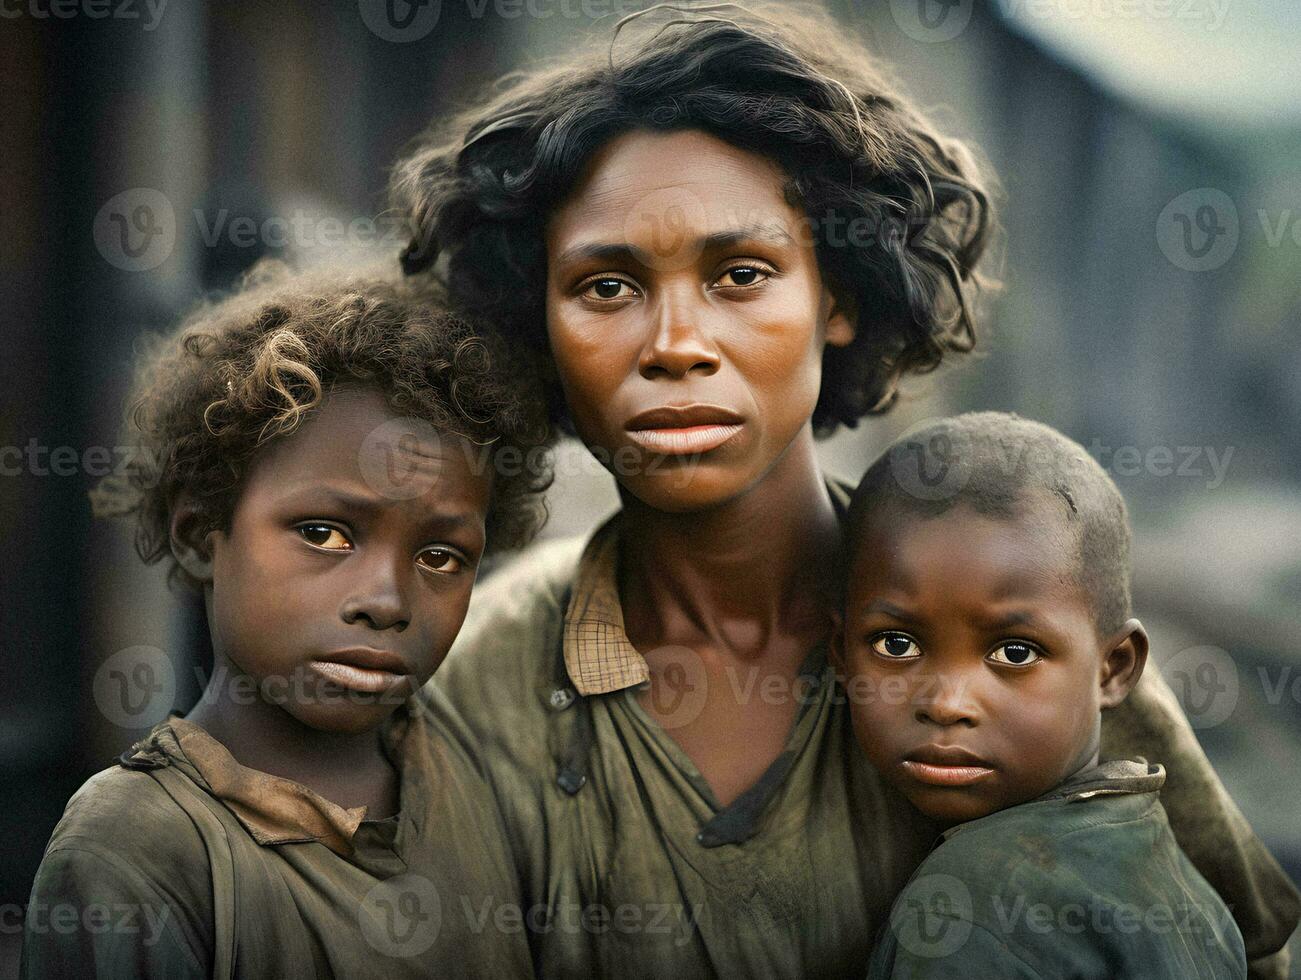 Resiliencia en medio de privación un pobre negro familia durante el 1930 genial depresión generativo ai foto